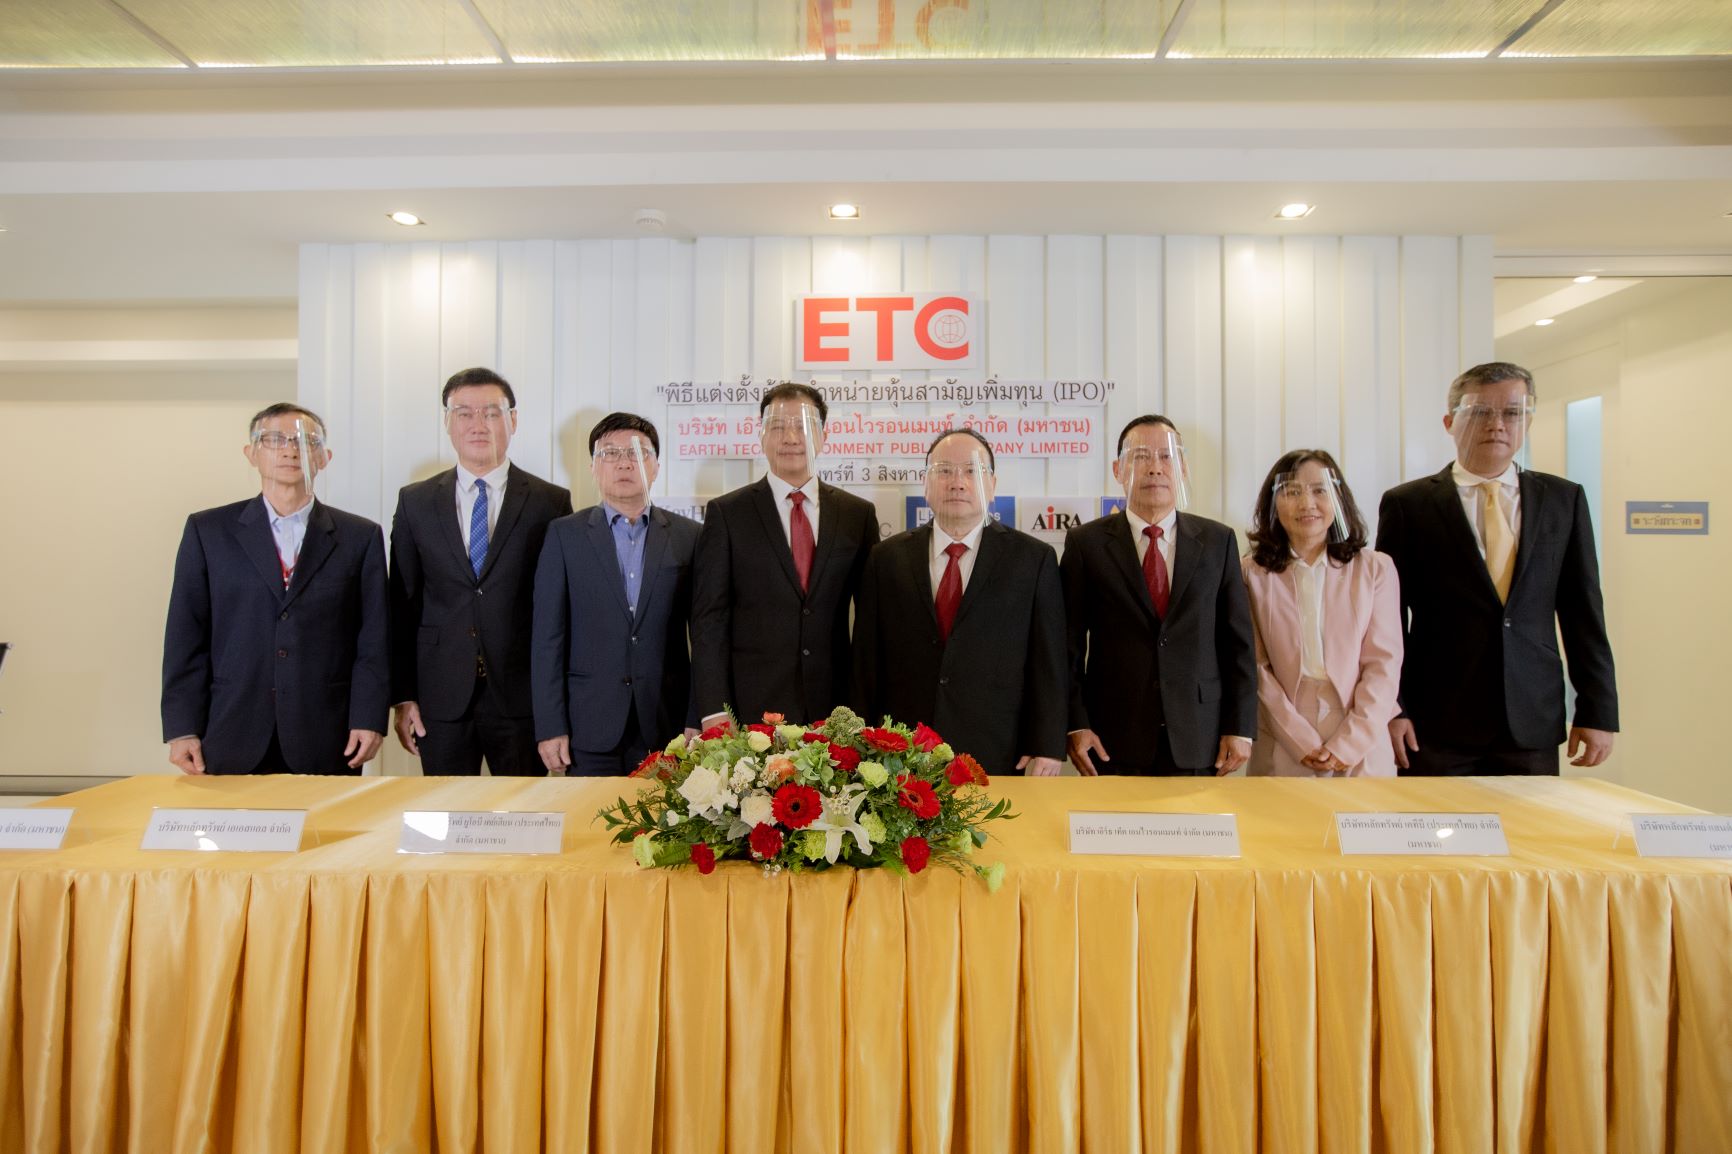 โรงไฟฟ้าขยะตัวแรกของไทย ETC เคาะราคาไอพีโอ 2.60 บาท ชูกำไรเติบโตแรง พร้อมประมูลโรงไฟฟ้าขยะ 444 เมกะวัตต์ กระแสนักลงทุนแรงจริง เปิดจอง 4-11 สิงหาคมนี้